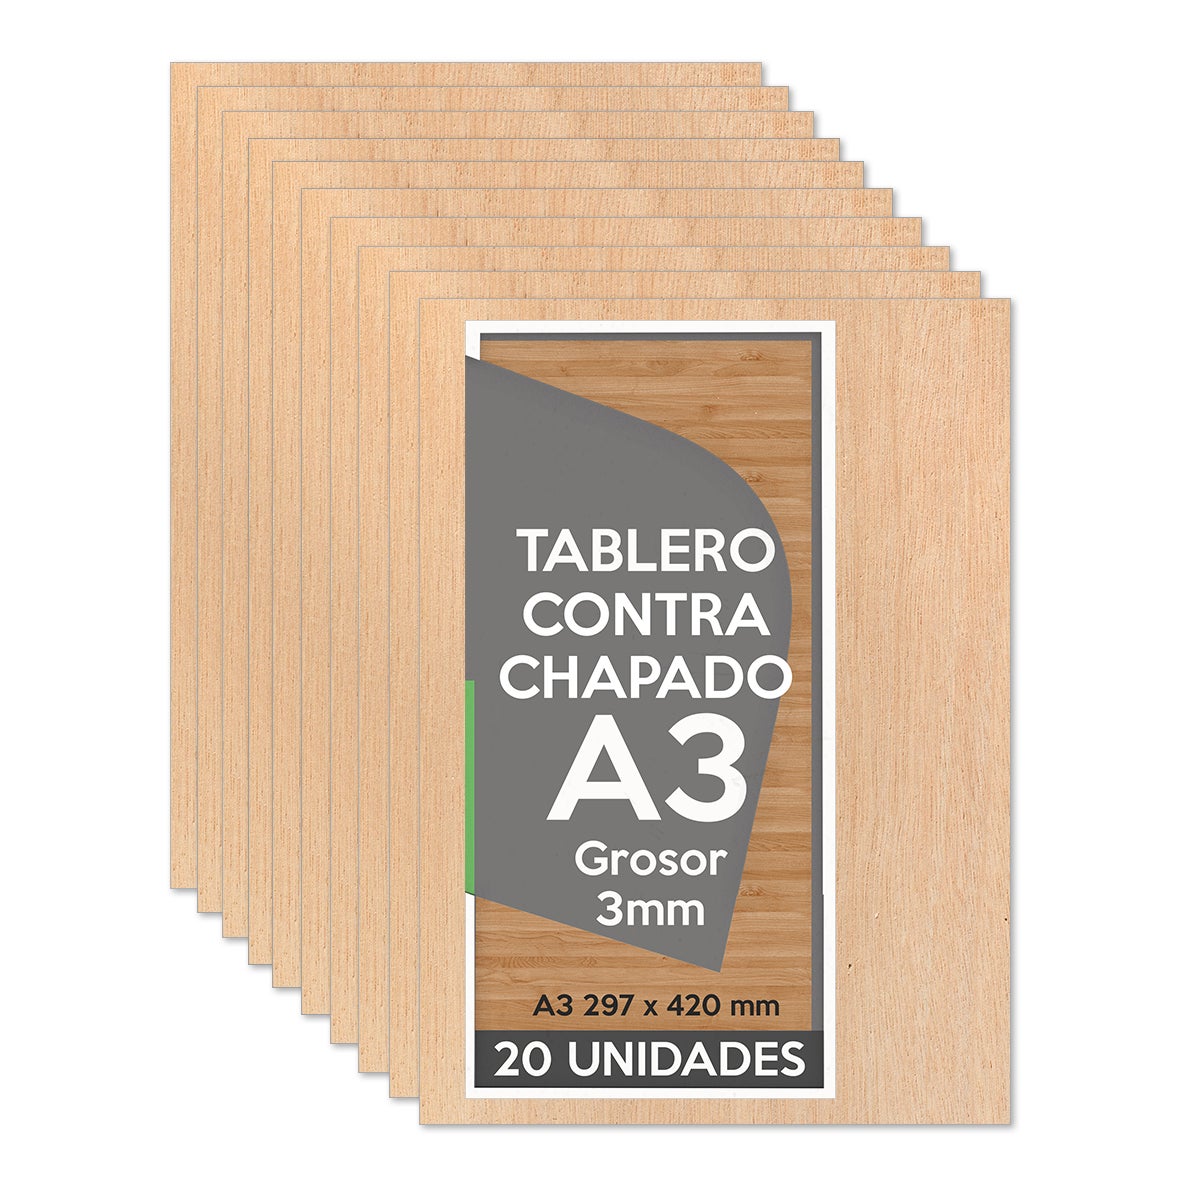 Tablero Madera Contrachapado A3 297x420 x 3mm (20 paneles) - Bricolaje,  Manualidades, Corte Láser, Marqueteria, Calado, Artesanía